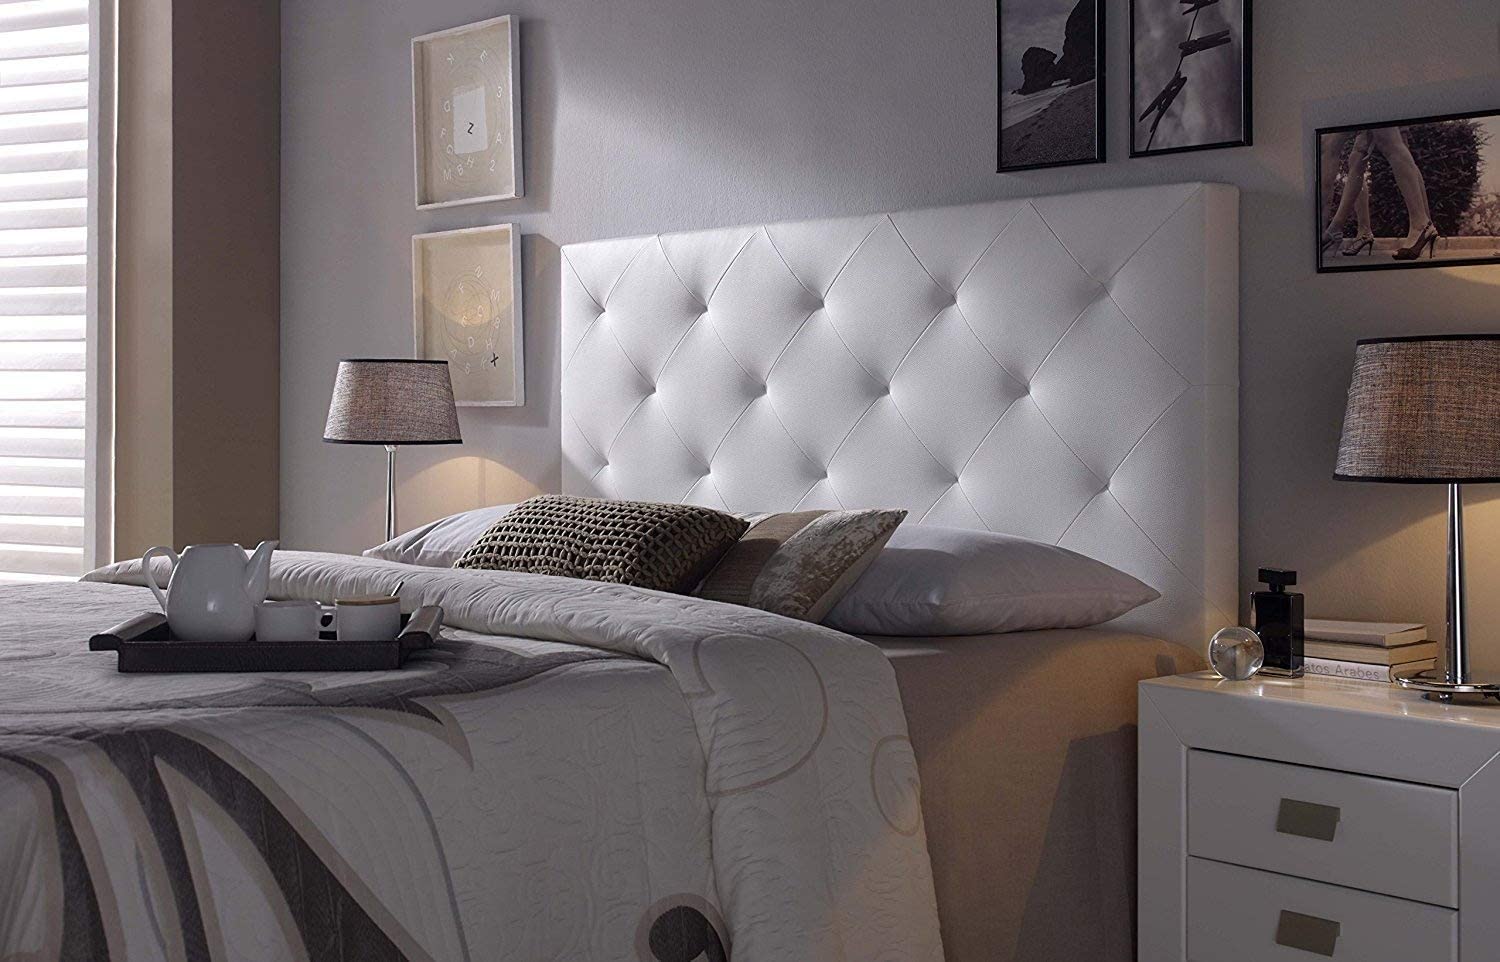 Cabeceros de cama sencillos y con mucho diseño - Espacio Concept